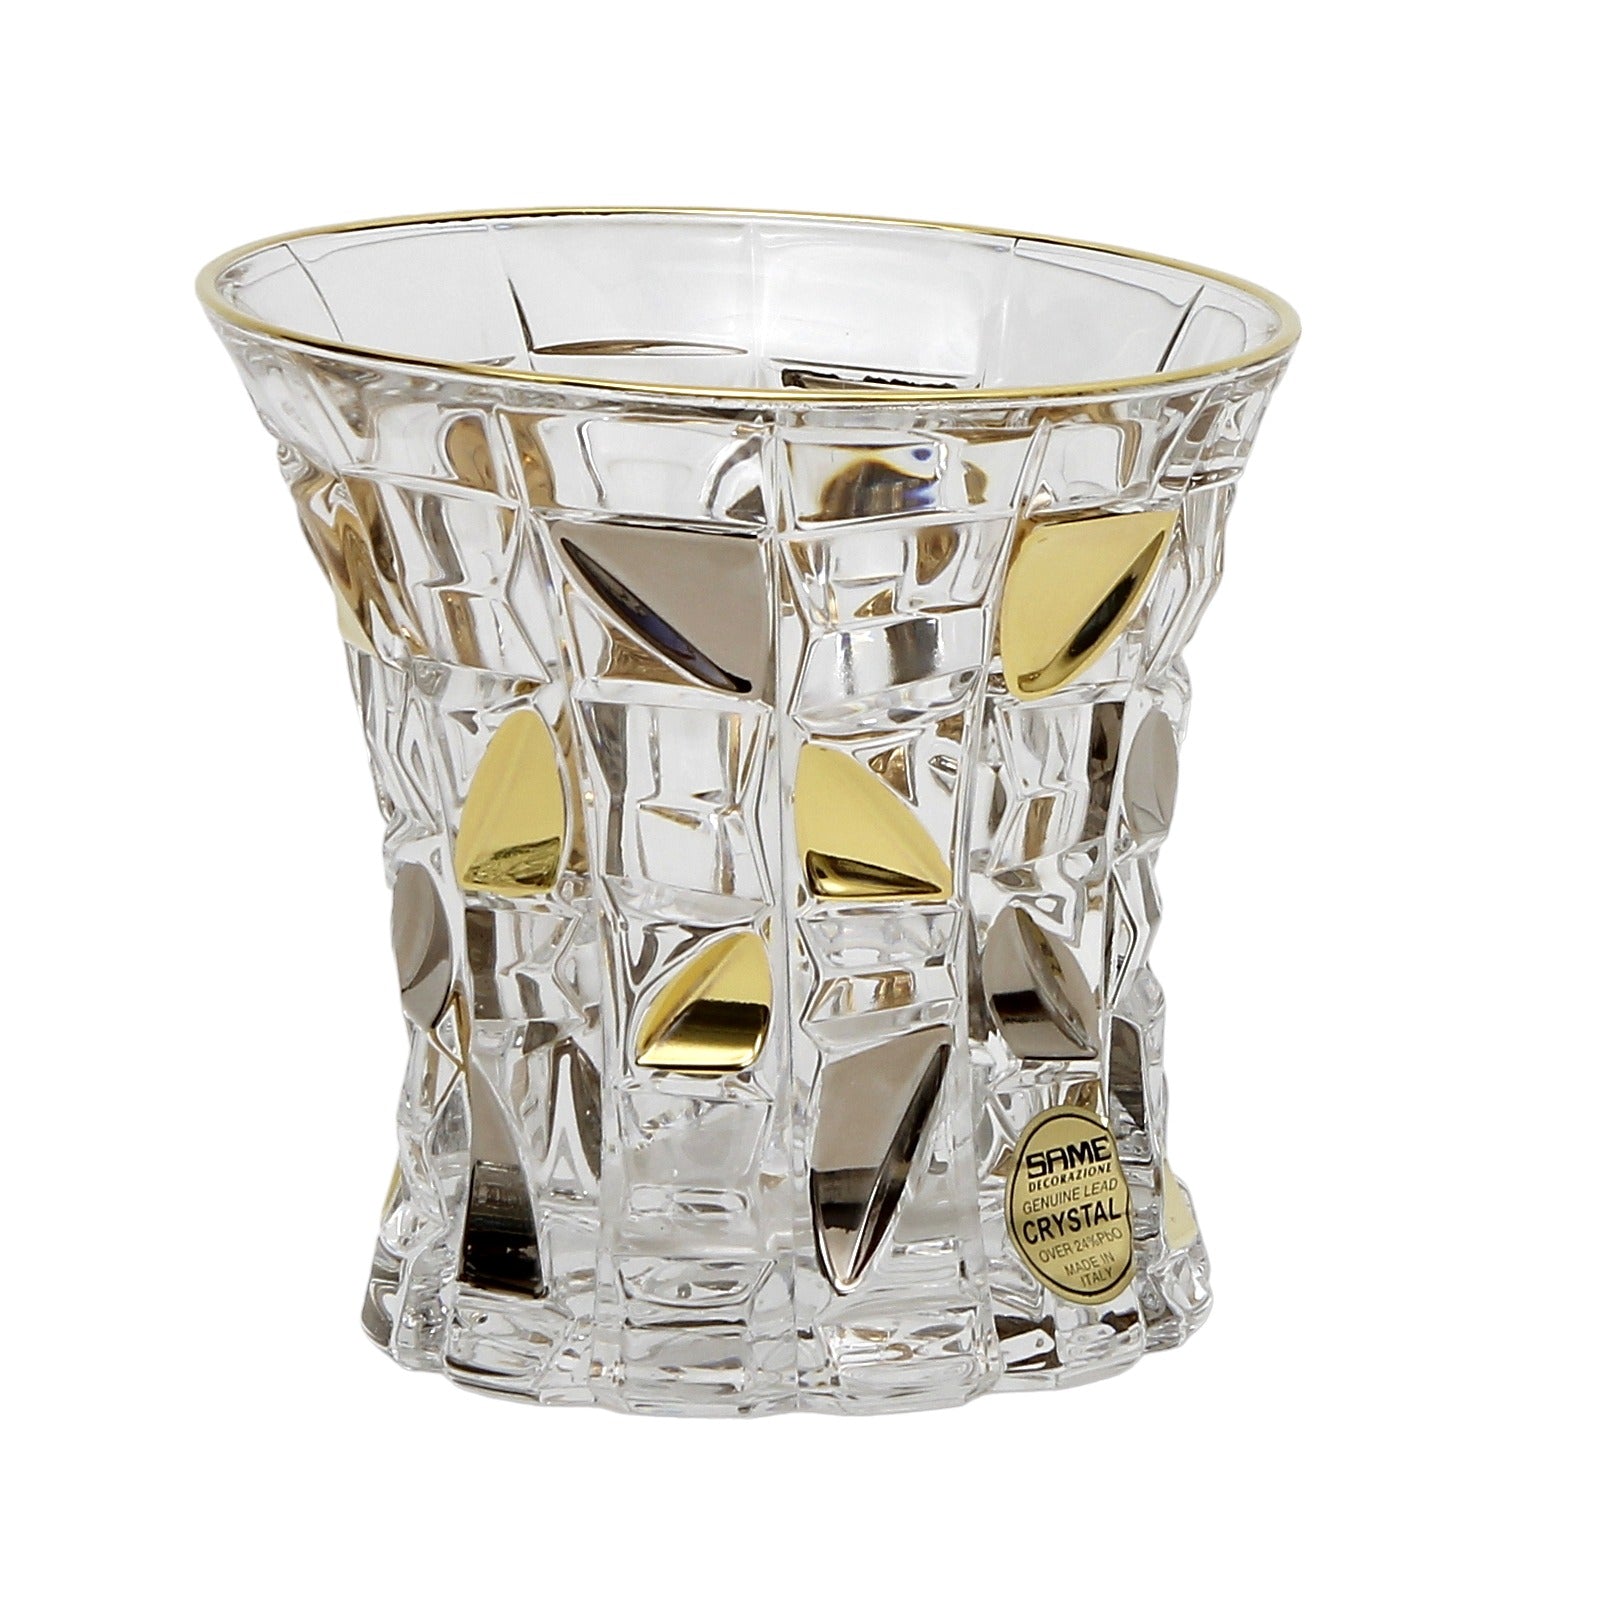 Abigails 4 - Piece 8oz. Glass Drinking Glass Glassware Set